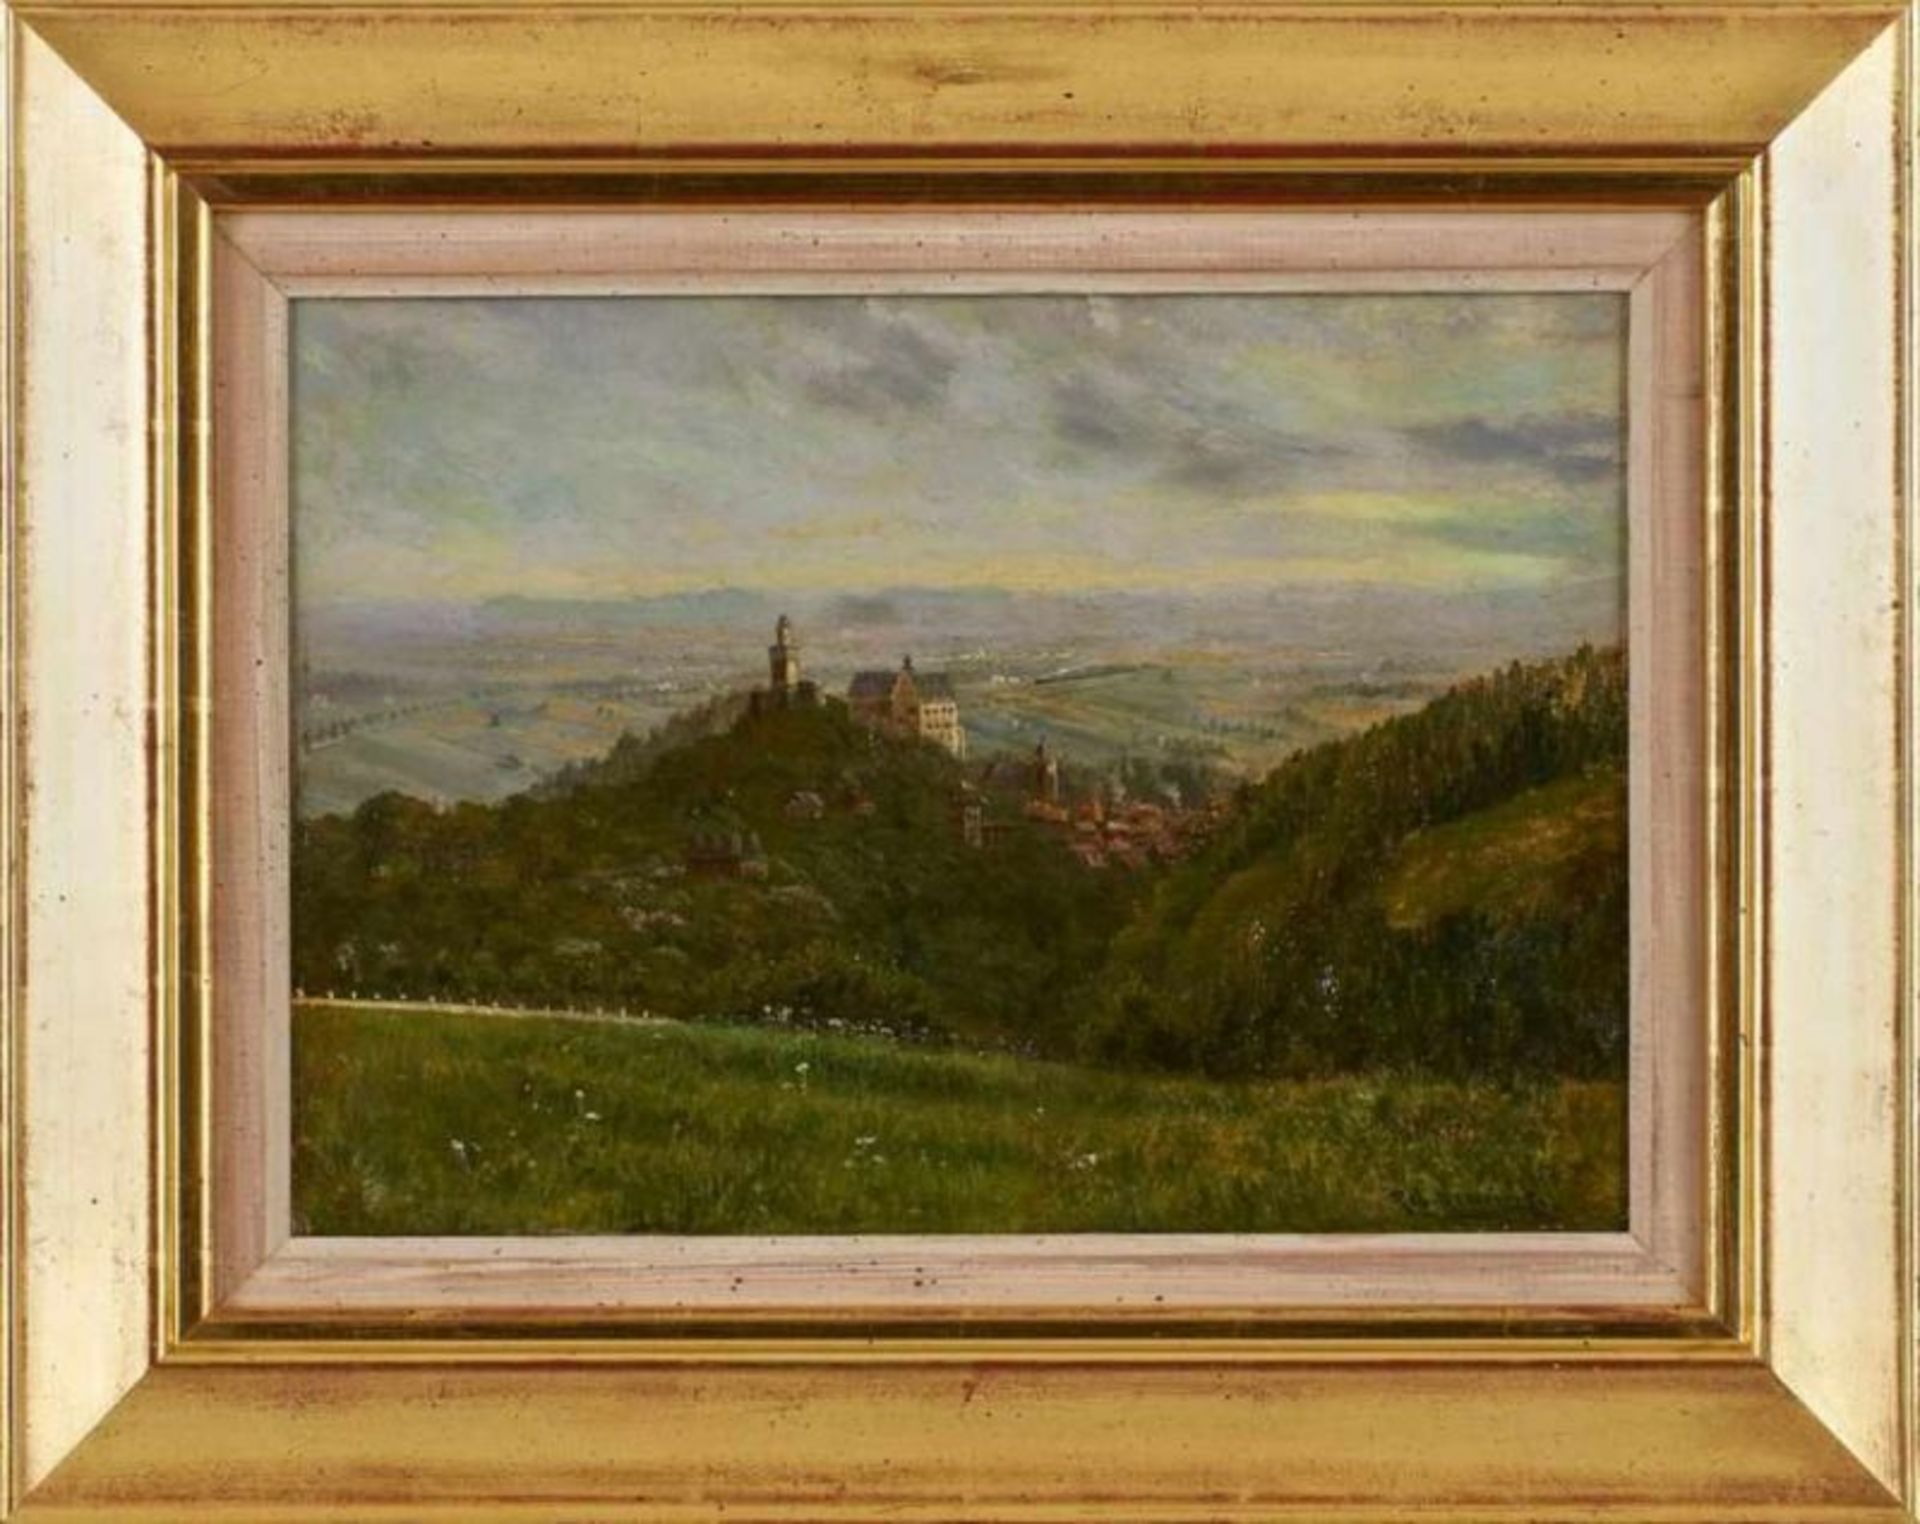 Gemälde Robert Henning 1875 Frankfurt, gest. 1930 "Kronberg mit Dampfeisenbahn in der Ebene" u. - Bild 2 aus 3